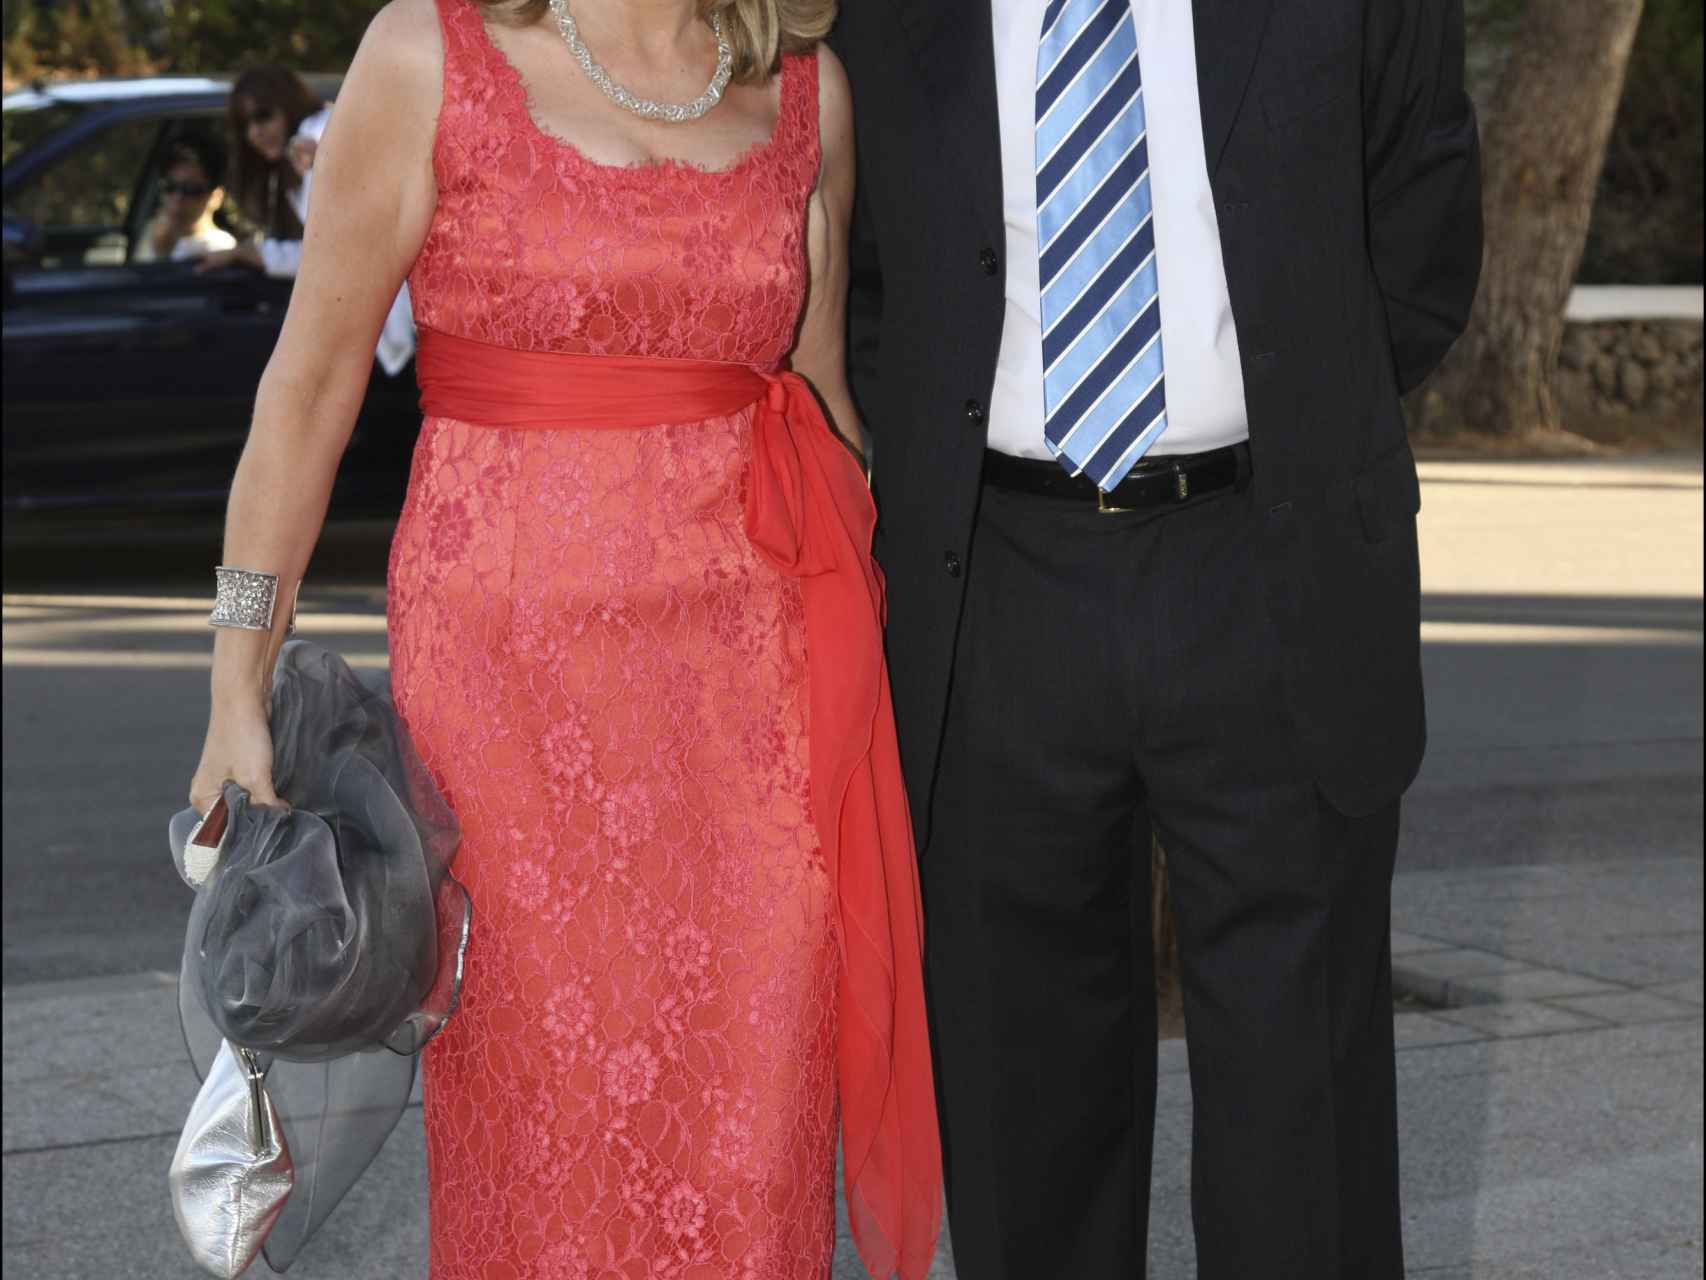 El matrimonio, en una boda en Mallorca en el año 2008